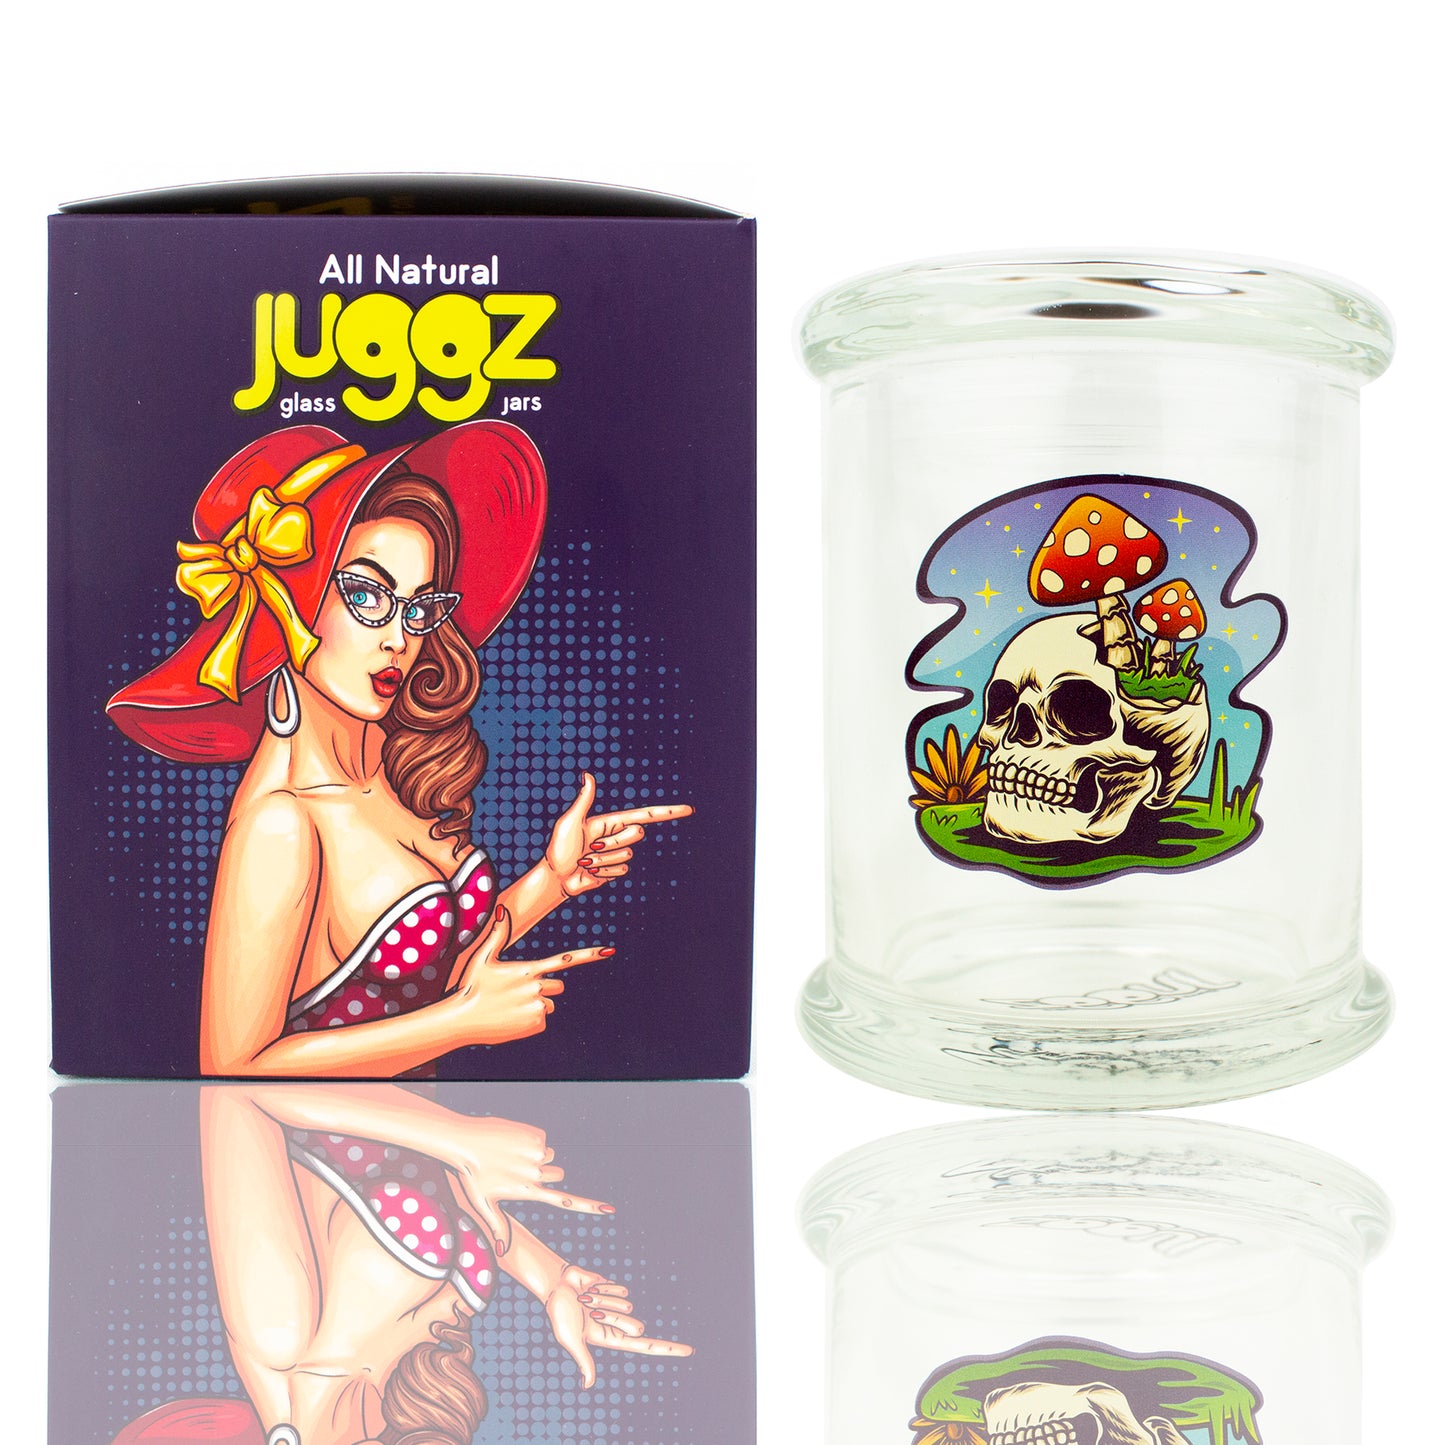 STOKES Juggz Glass Jars - Skeleton